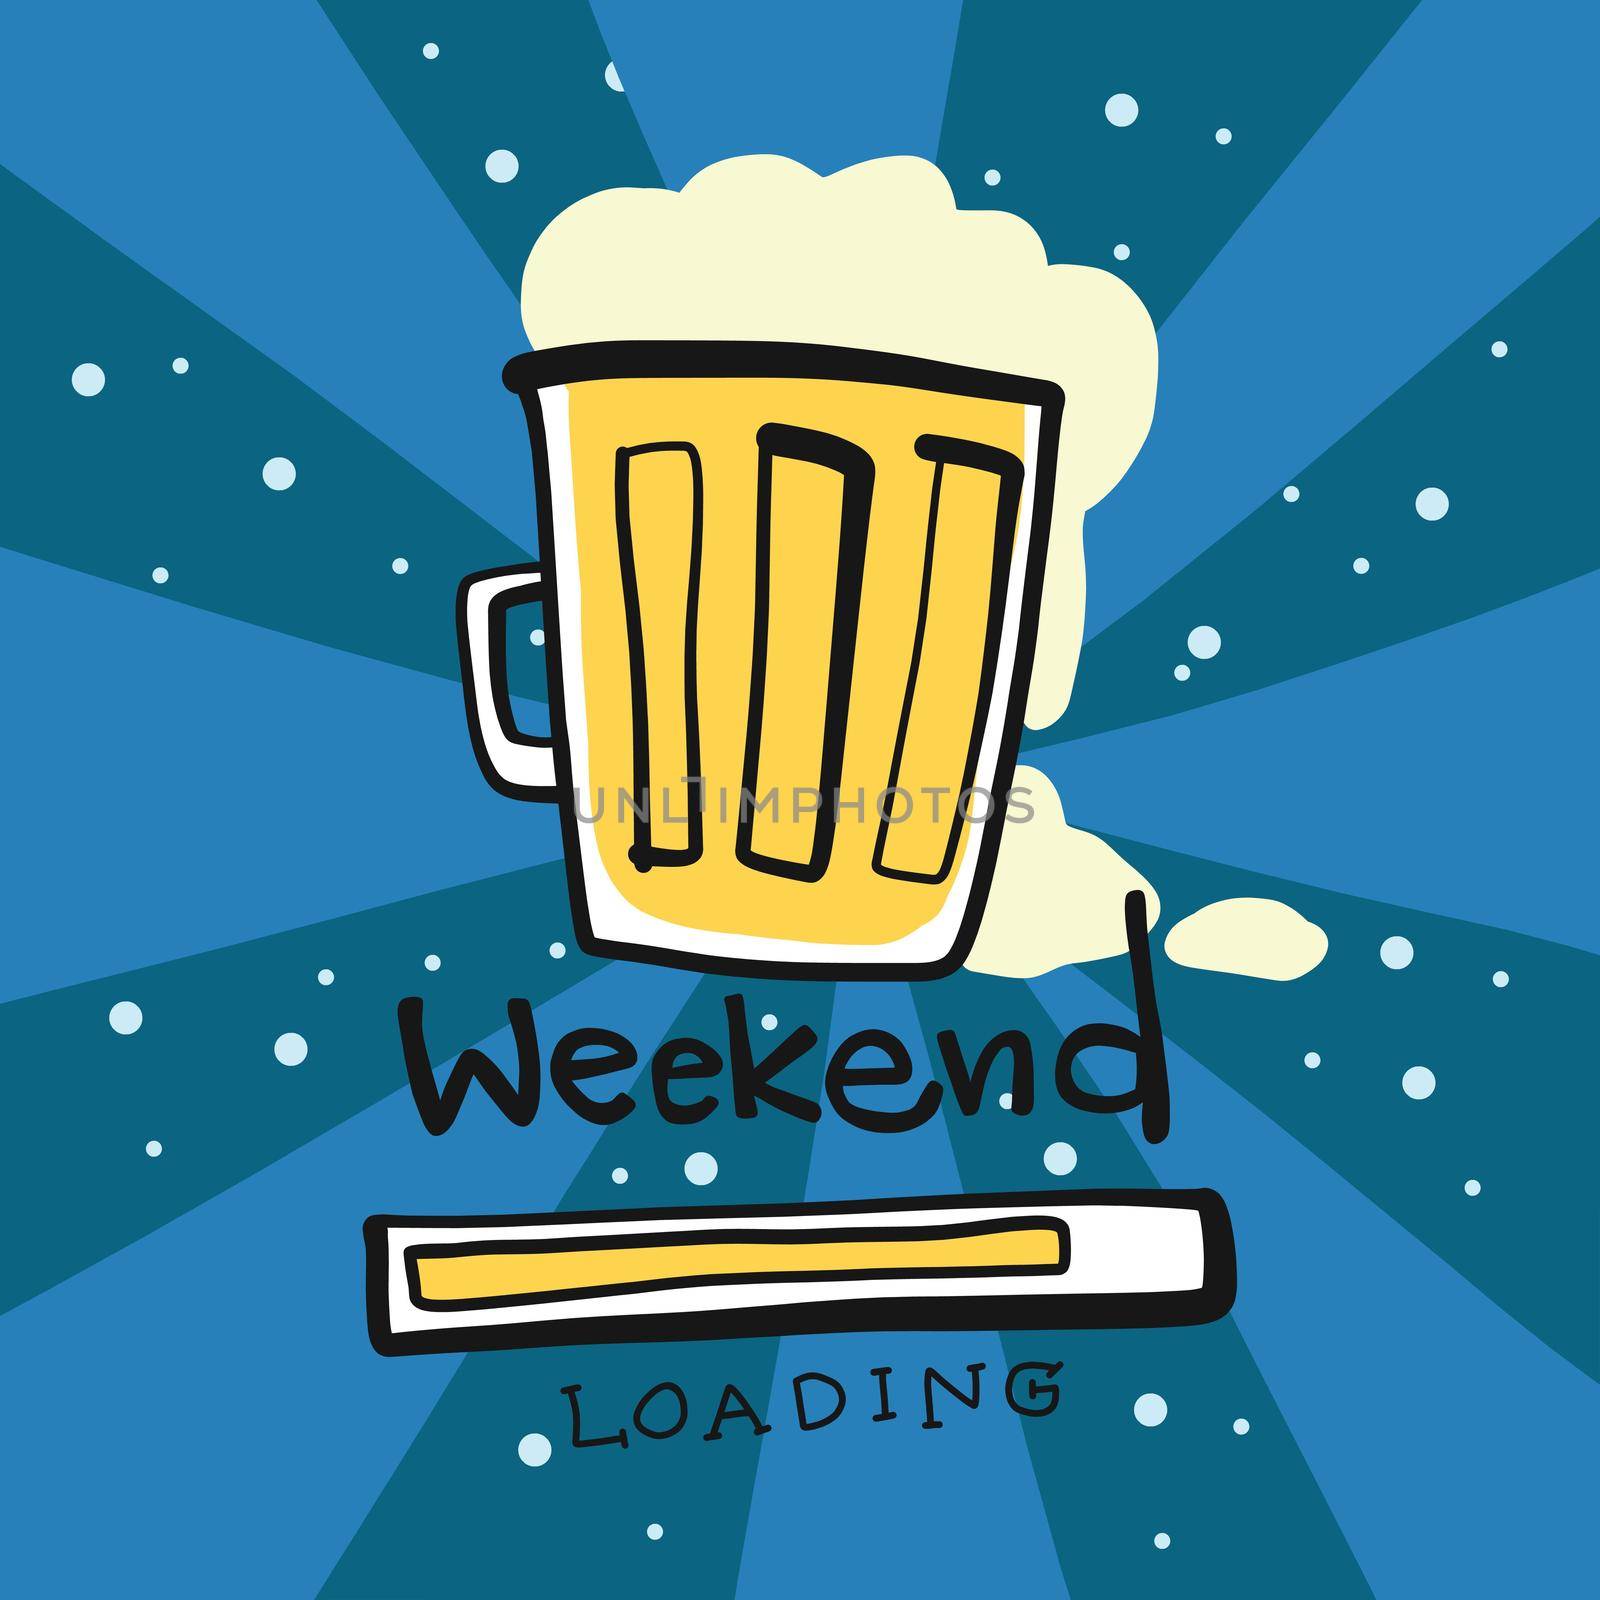 Beer mug weekend loading cartoon vector illustration